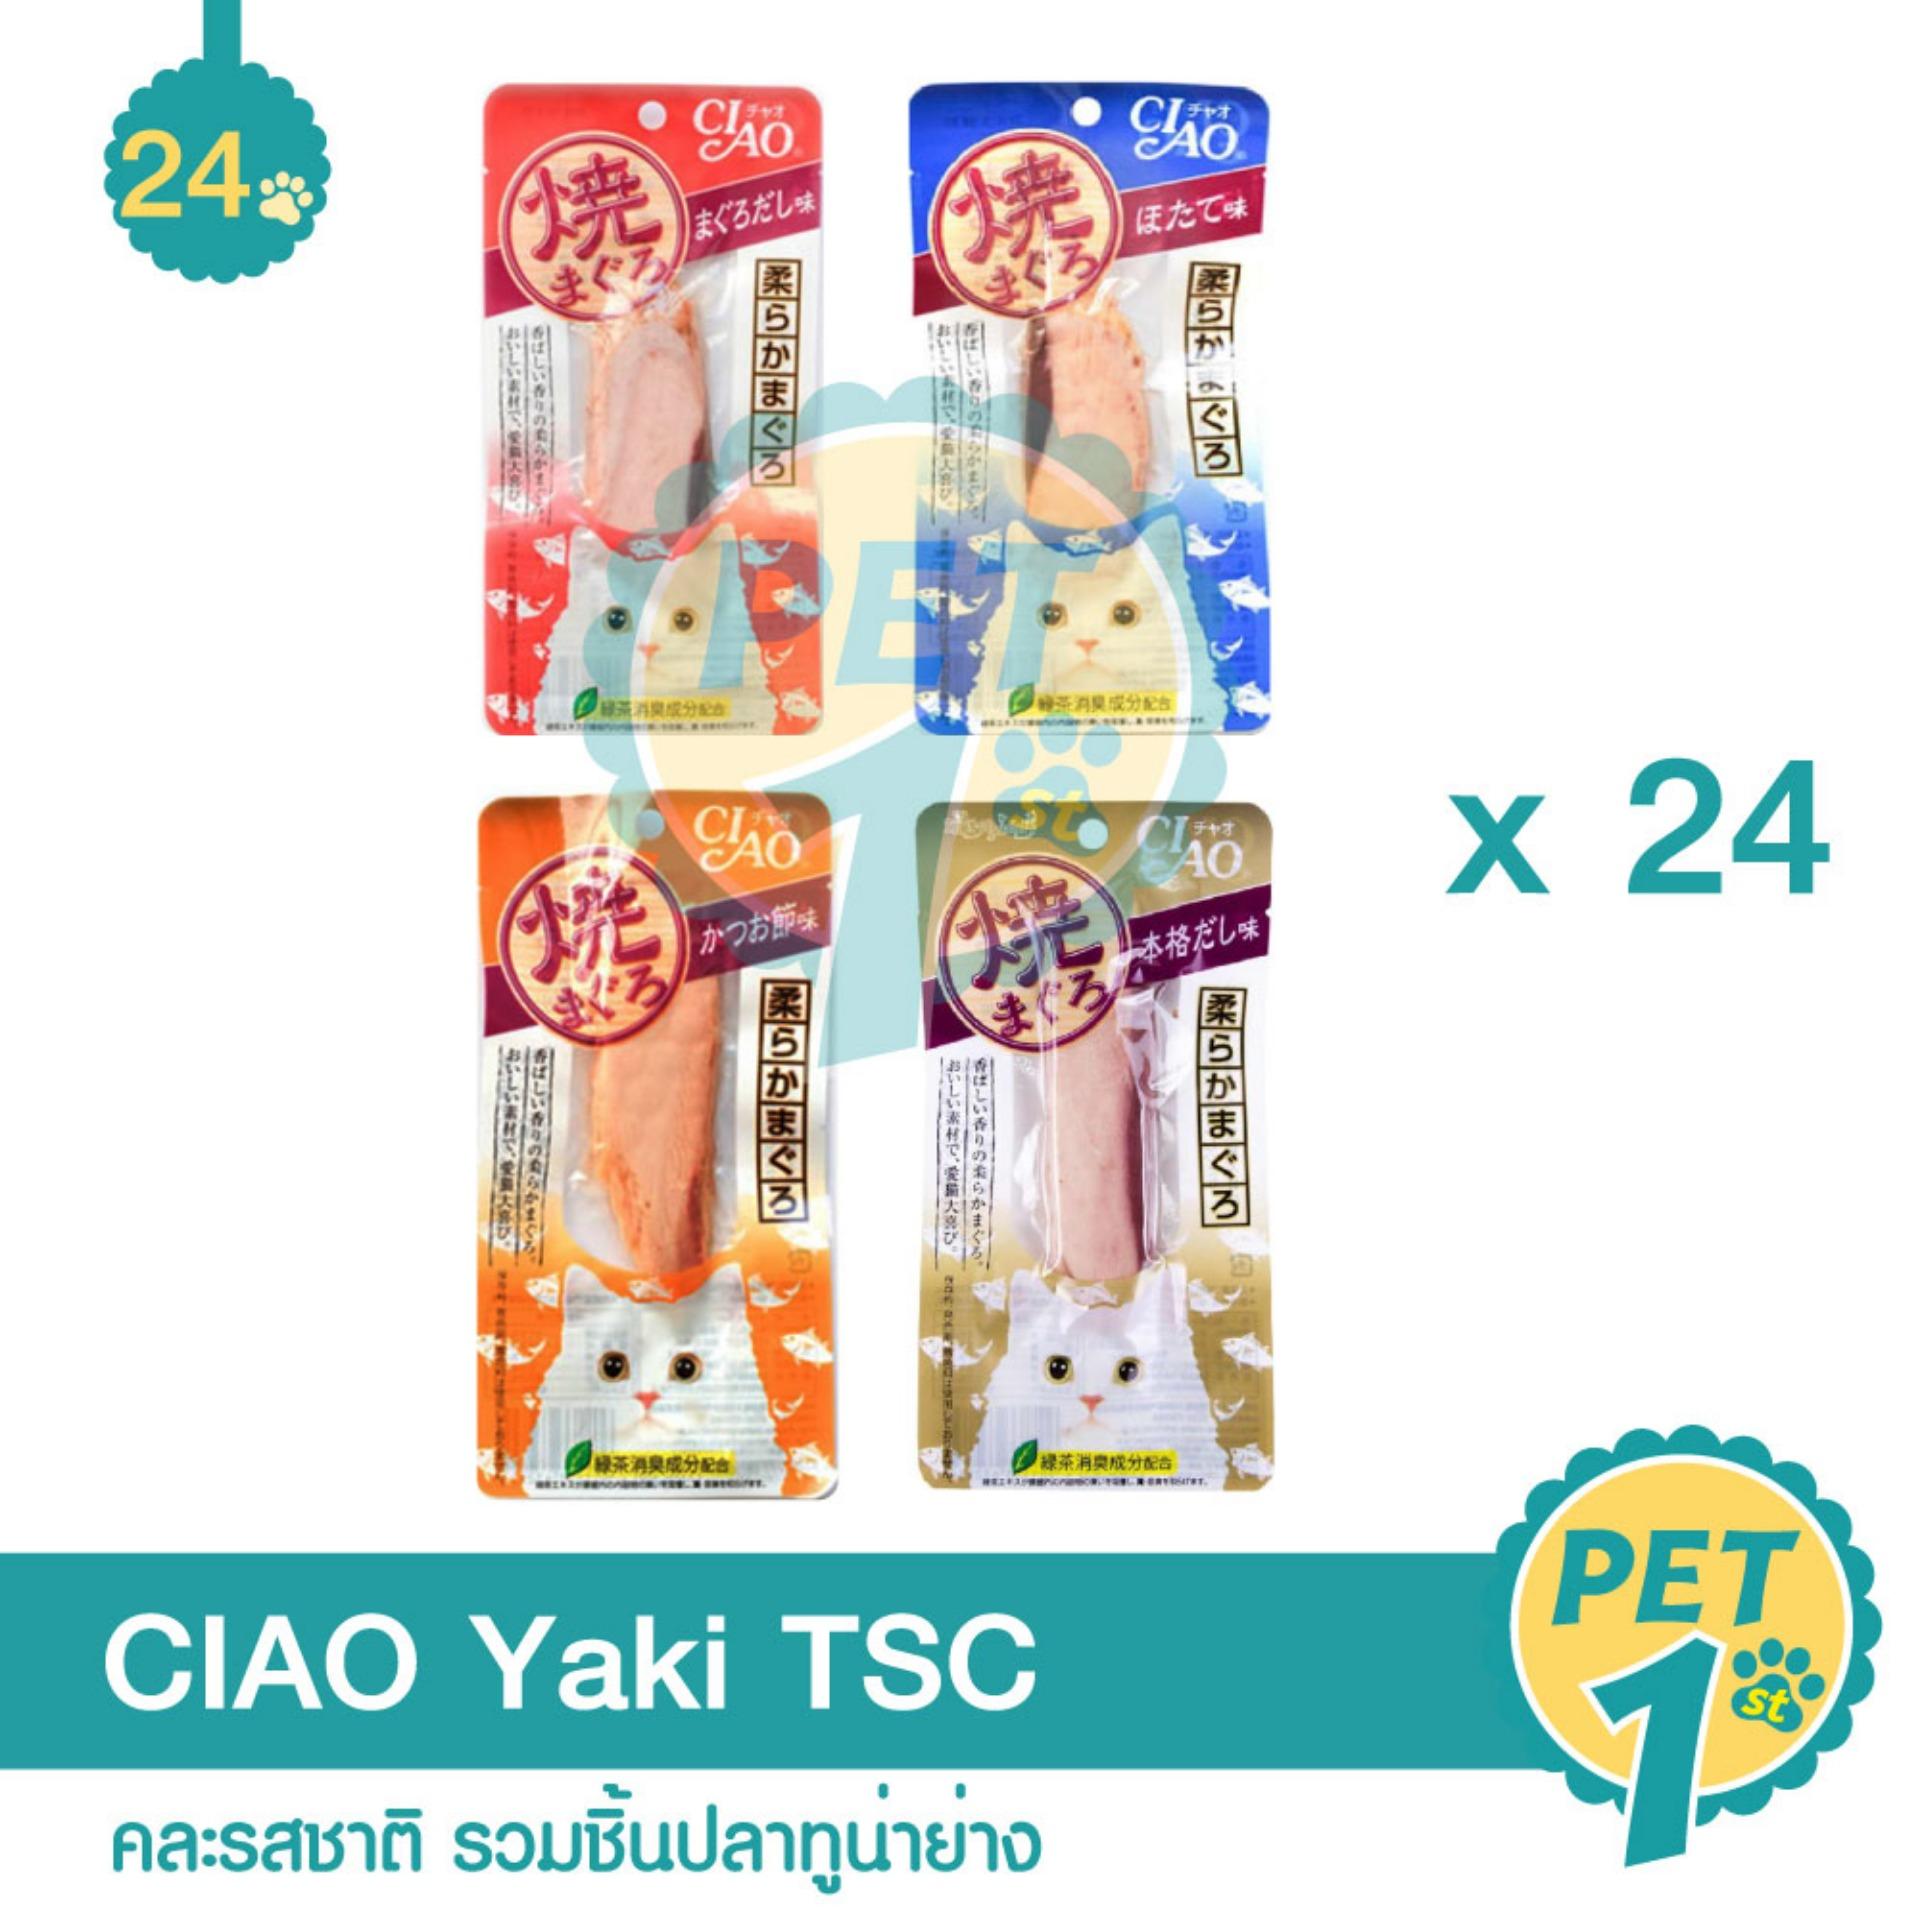 CIAO Yaki ขนมแมว คละรสชาติ รวมชิ้นปลาทูน่าย่าง - 24 ชิ้น